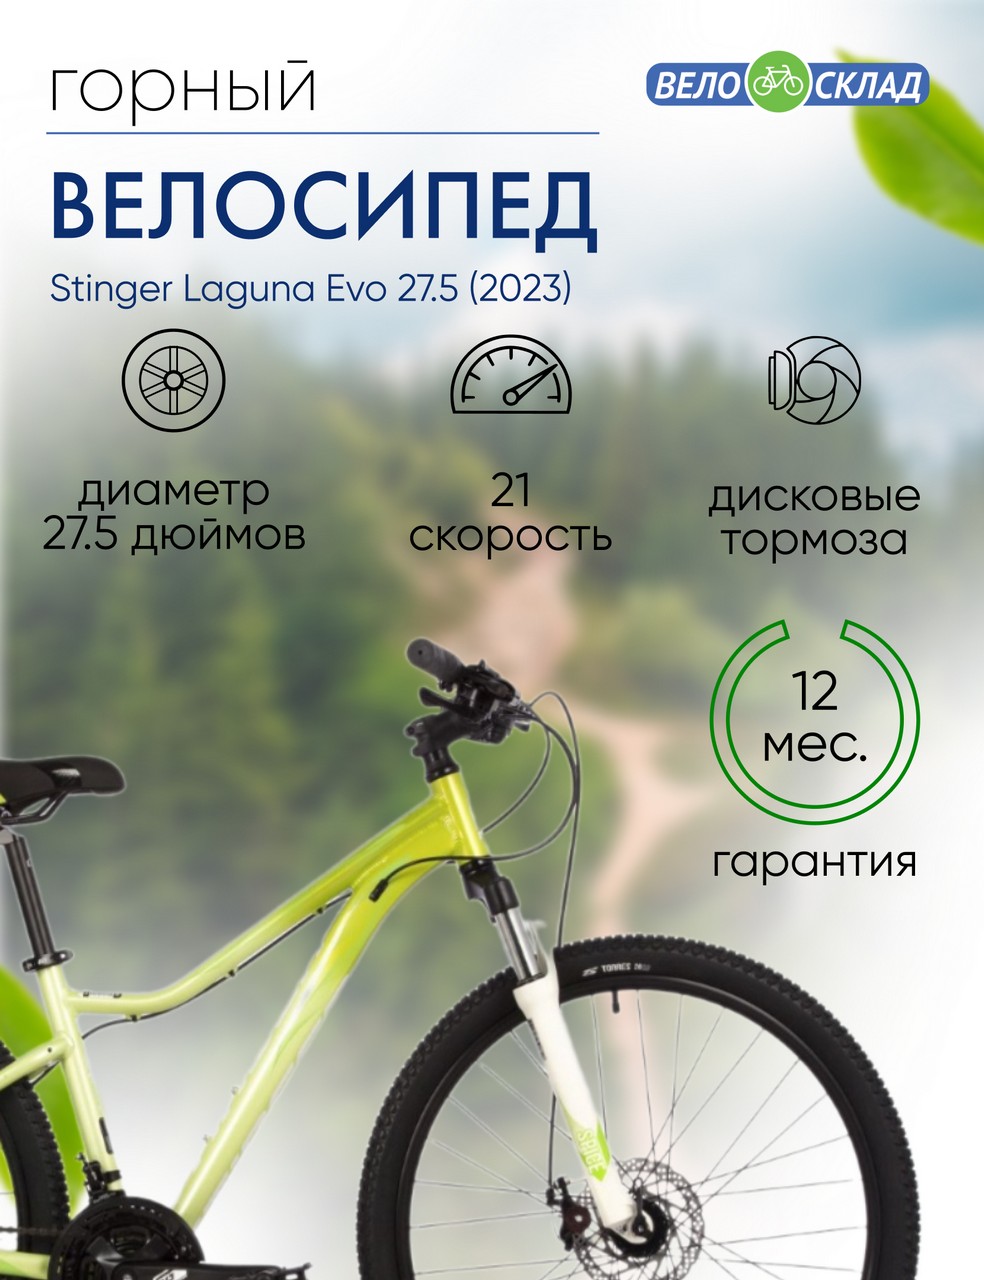 Женский велосипед Stinger Laguna Evo 27.5, год 2023, цвет Зеленый, ростовка 19